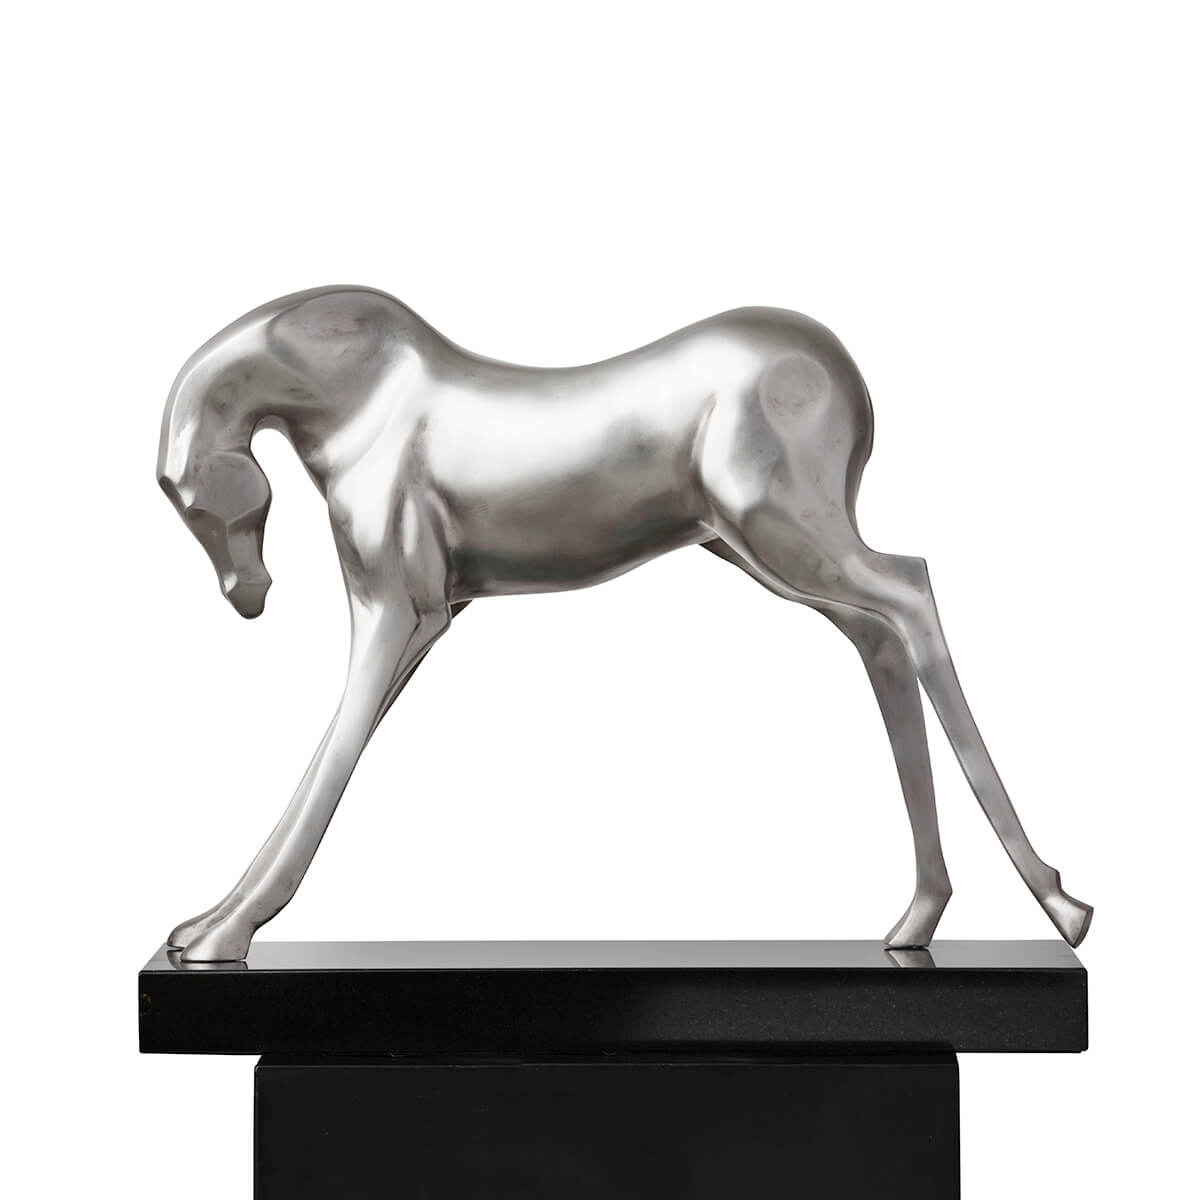 Robert-Helle-Sculpture-Gallery-Horse-Header-1200x1200